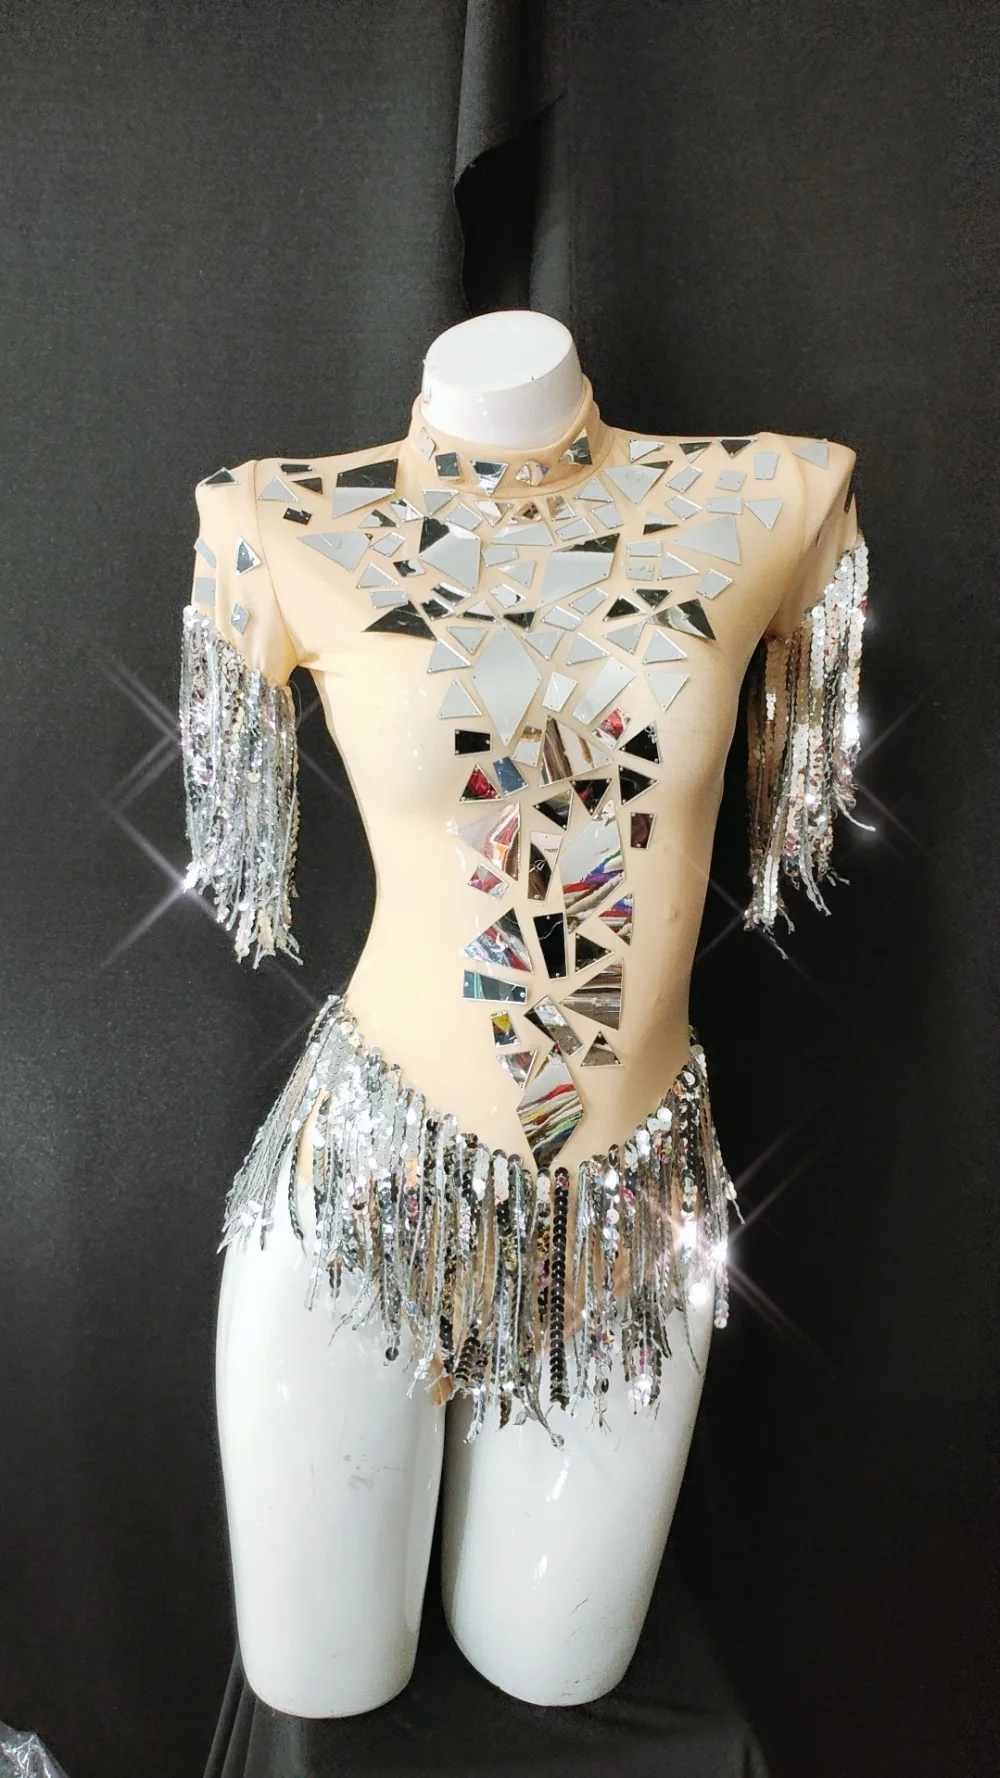 Телесного цвета пикантные серебряные зеркала купальник для танцев костюм Для женщин бахромой боди вечерние Show ночной клуб бар женский для сценического выступления певца одежда